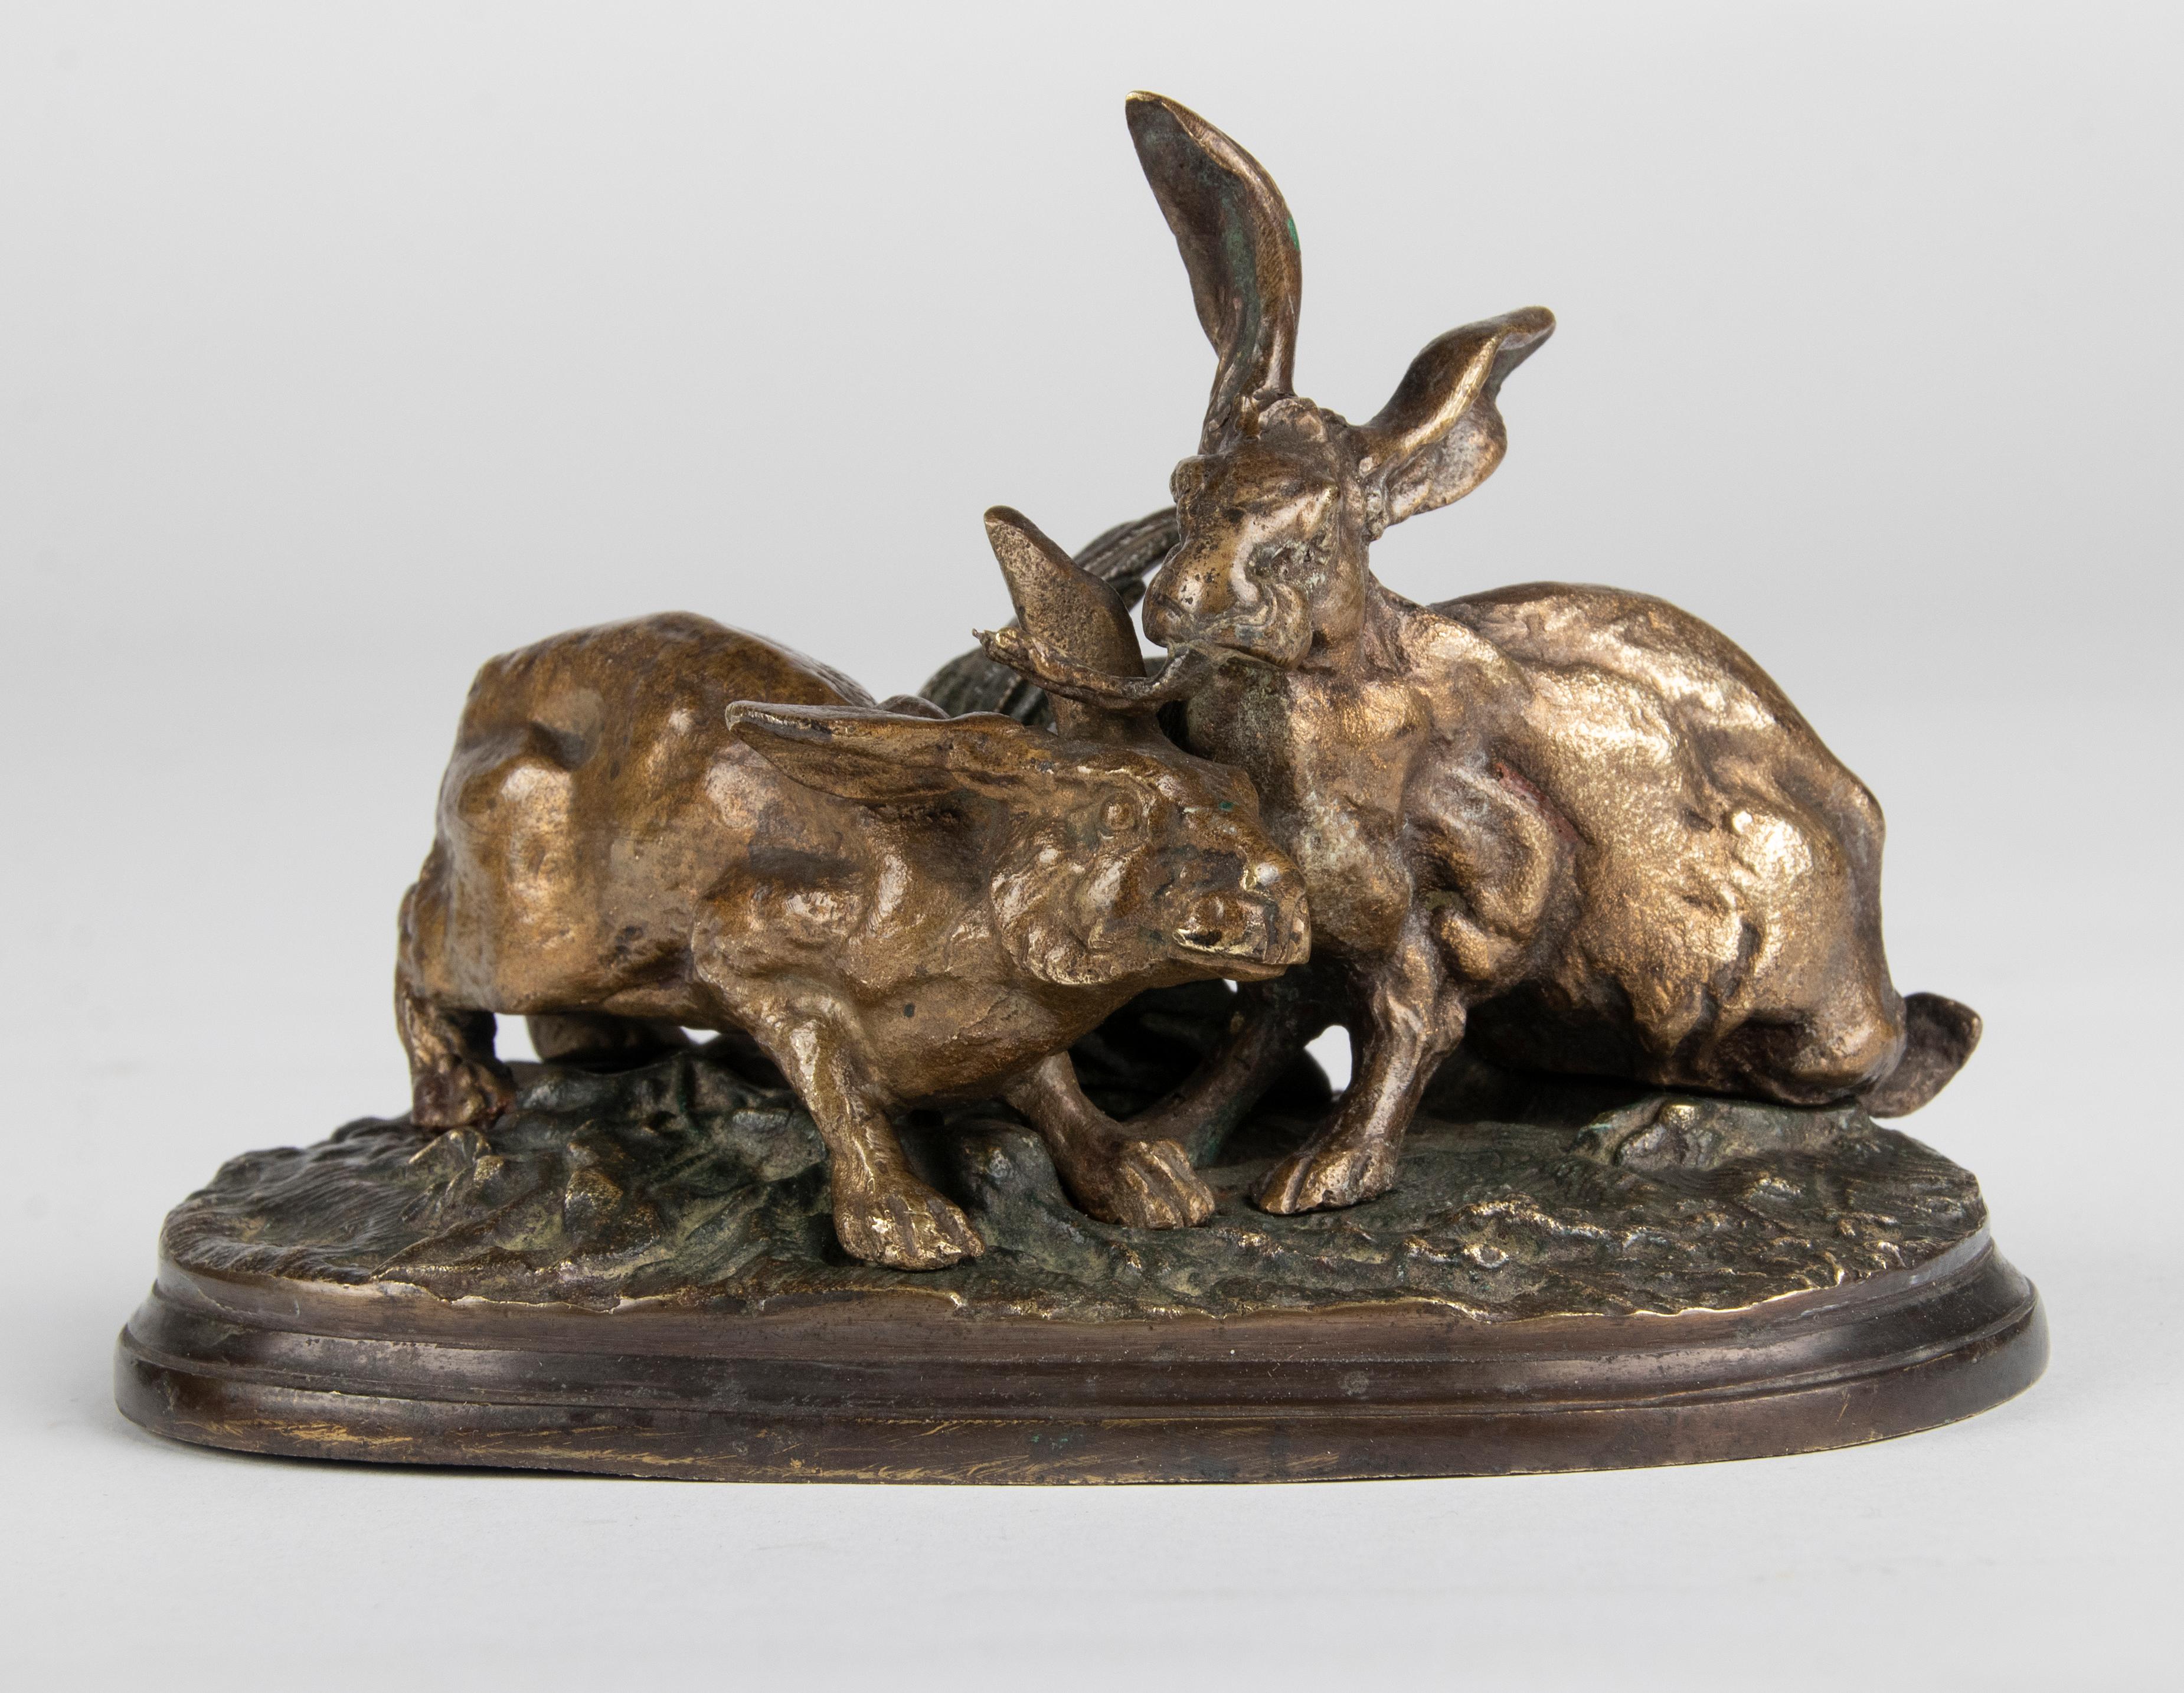 Eine raffinierte kleine Bronzeskulptur mit einer Gruppe von Hasen. Genaue anatomische Proportionen. Mit der ursprünglichen Patina. Signiert auf dem Sockel: PJ Mène.

Pierre-Jules Mêne (25. März 1810 - 20. Mai 1879) war ein französischer Bildhauer